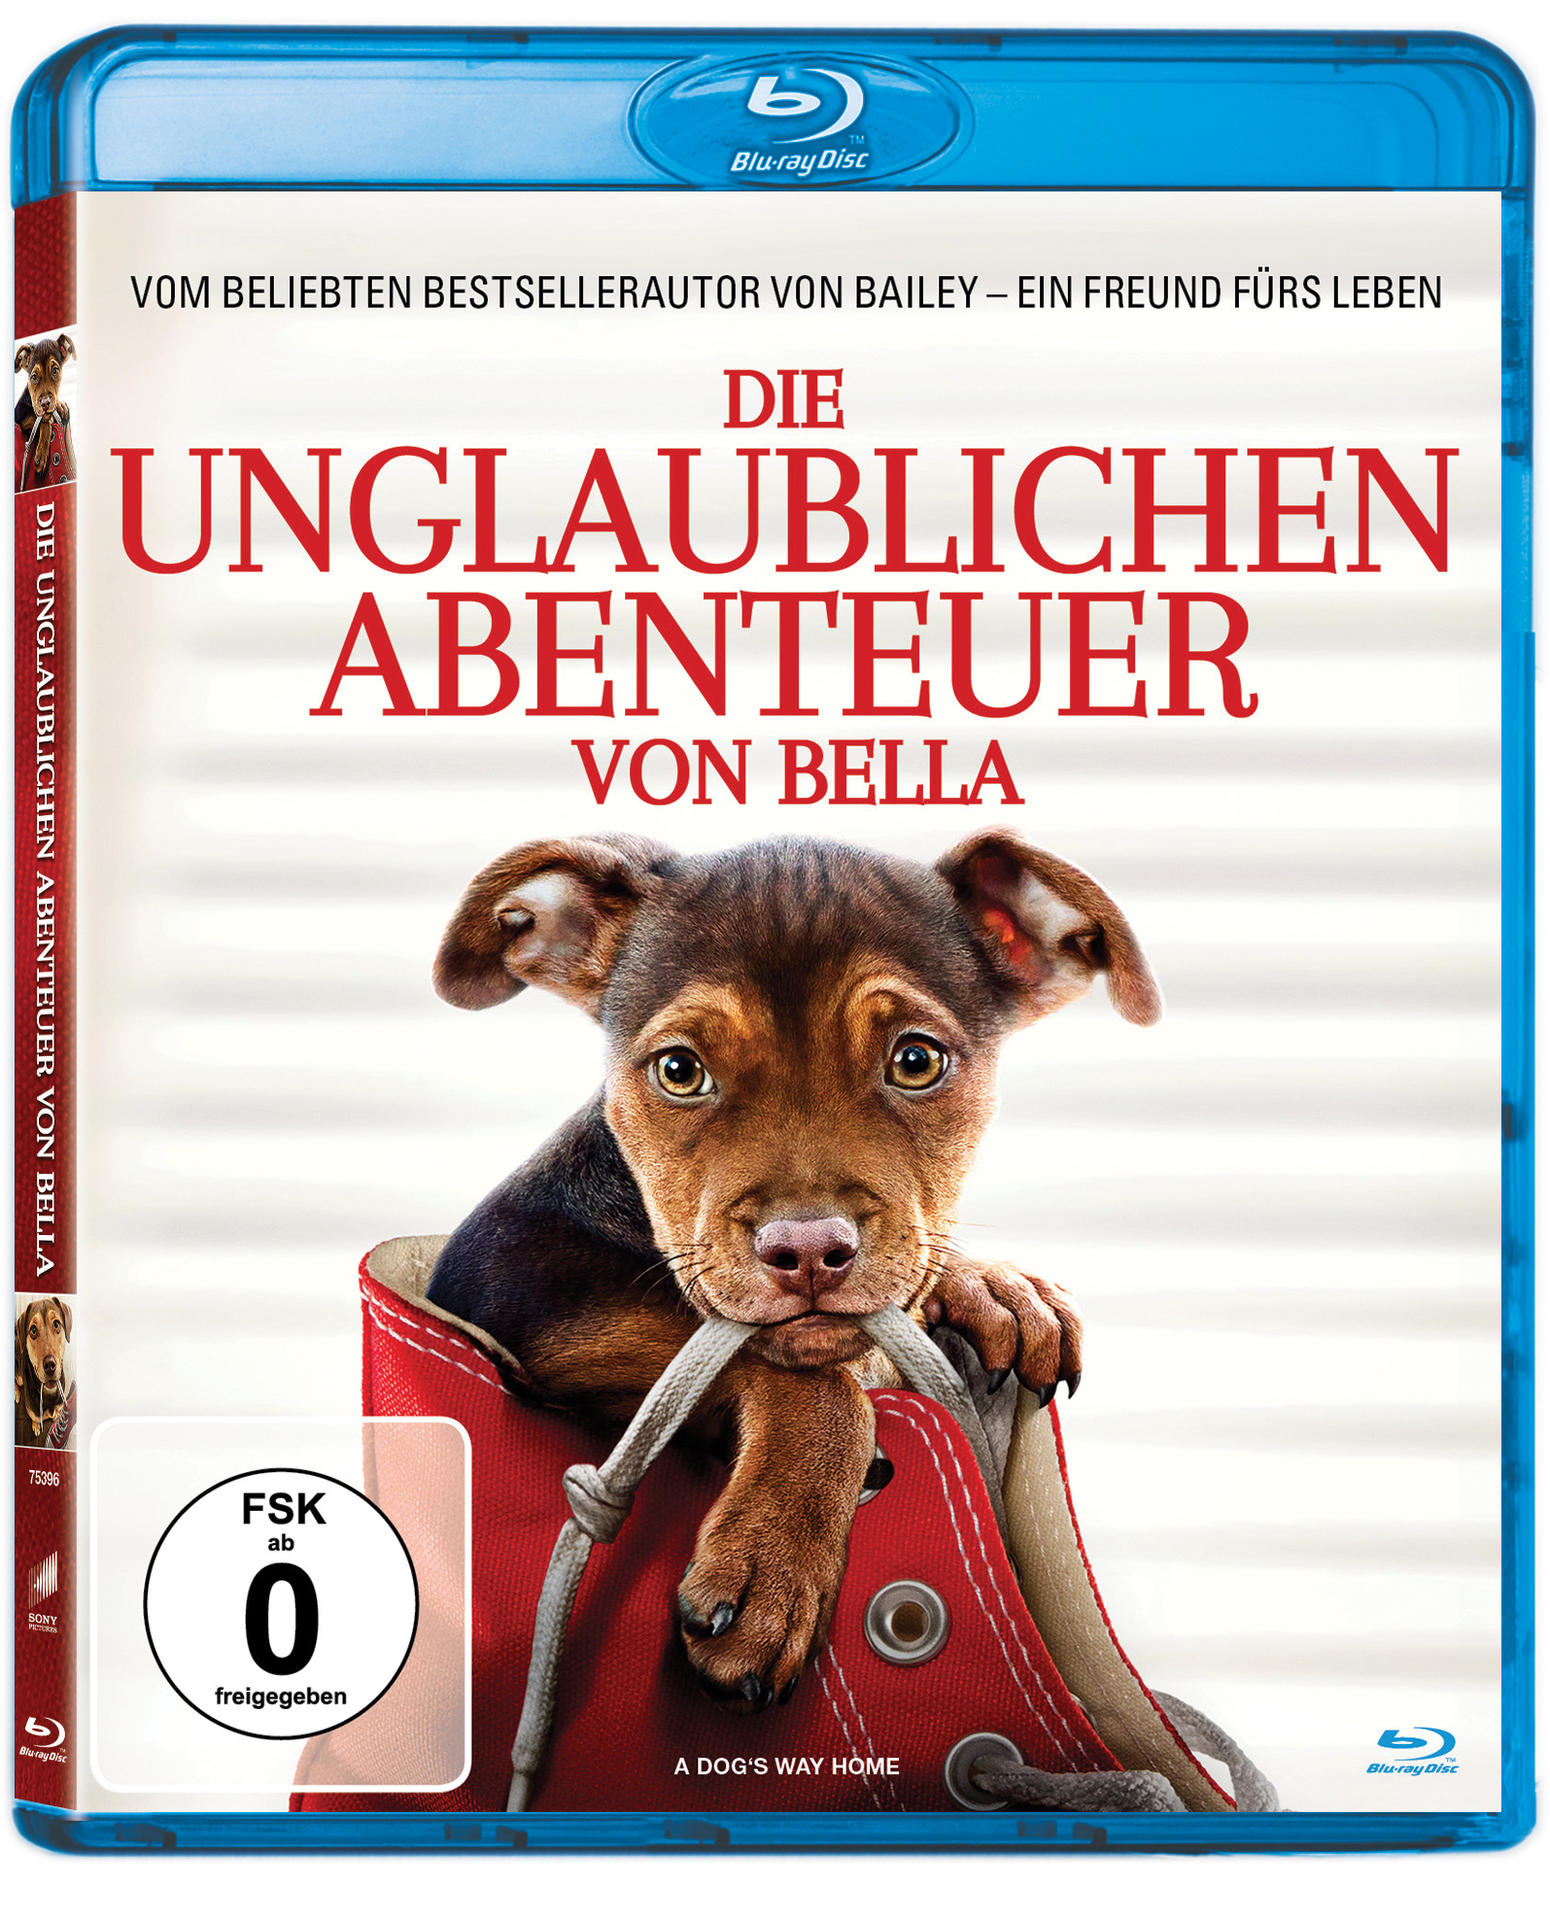 Blu-ray von Abenteuer Bella unglaublichen Die